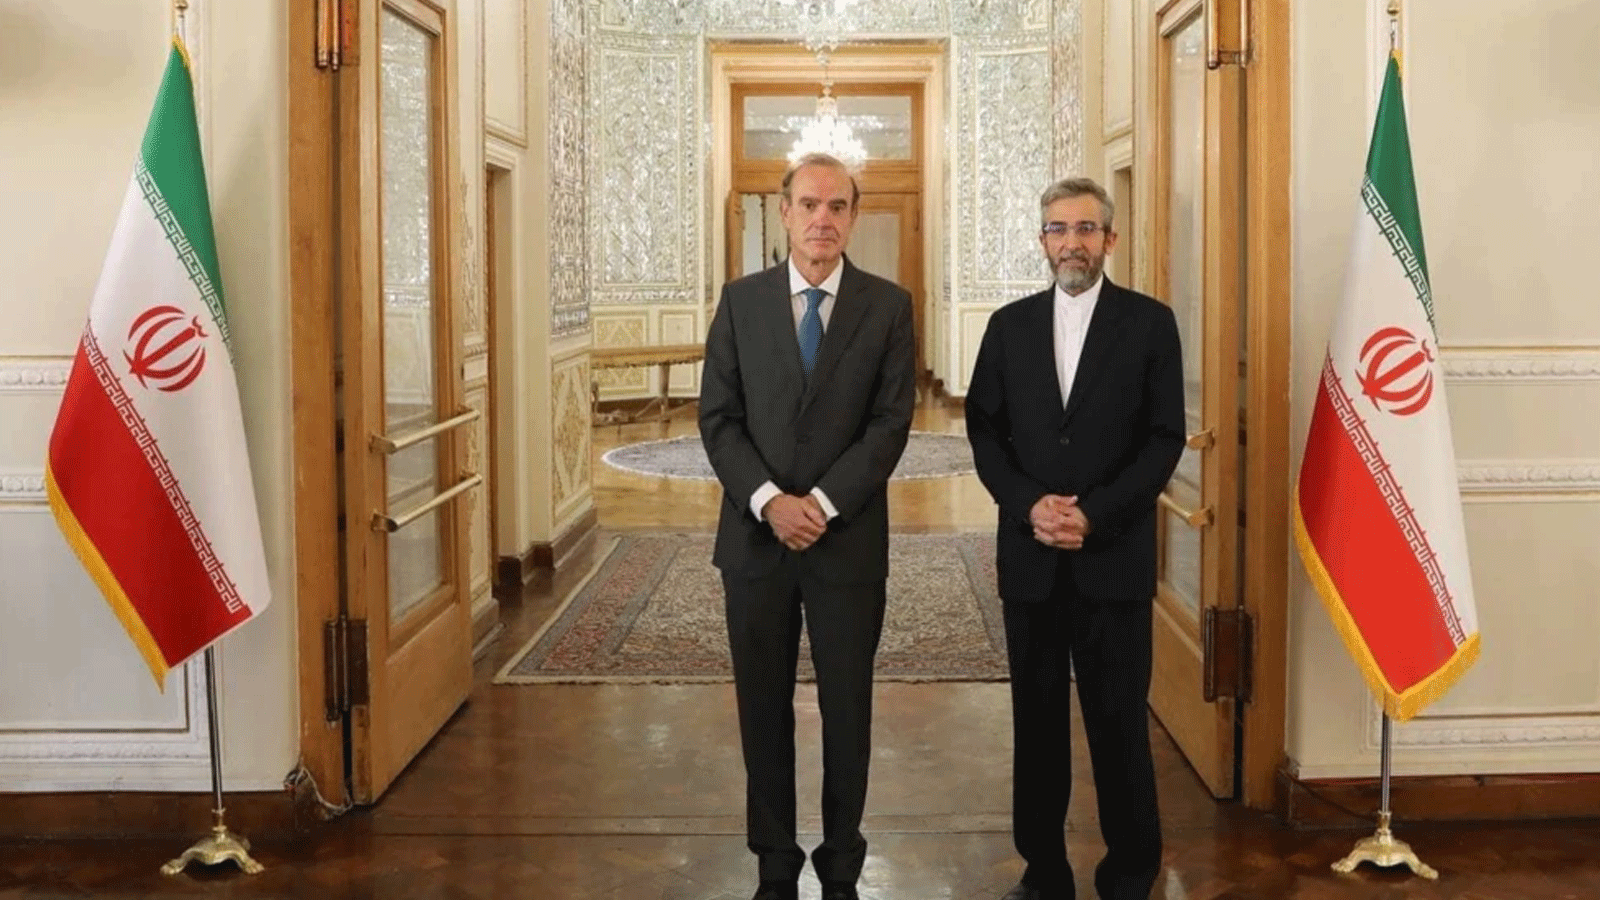 كبير مفاوضي الاتحاد الأوروبي بشأن الاتفاق النووي الإيراني، إنريكي مورا (إلى اليسار)، يقف مع علي باقري، كبير المفاوضين الإيرانيين.(إرنا)